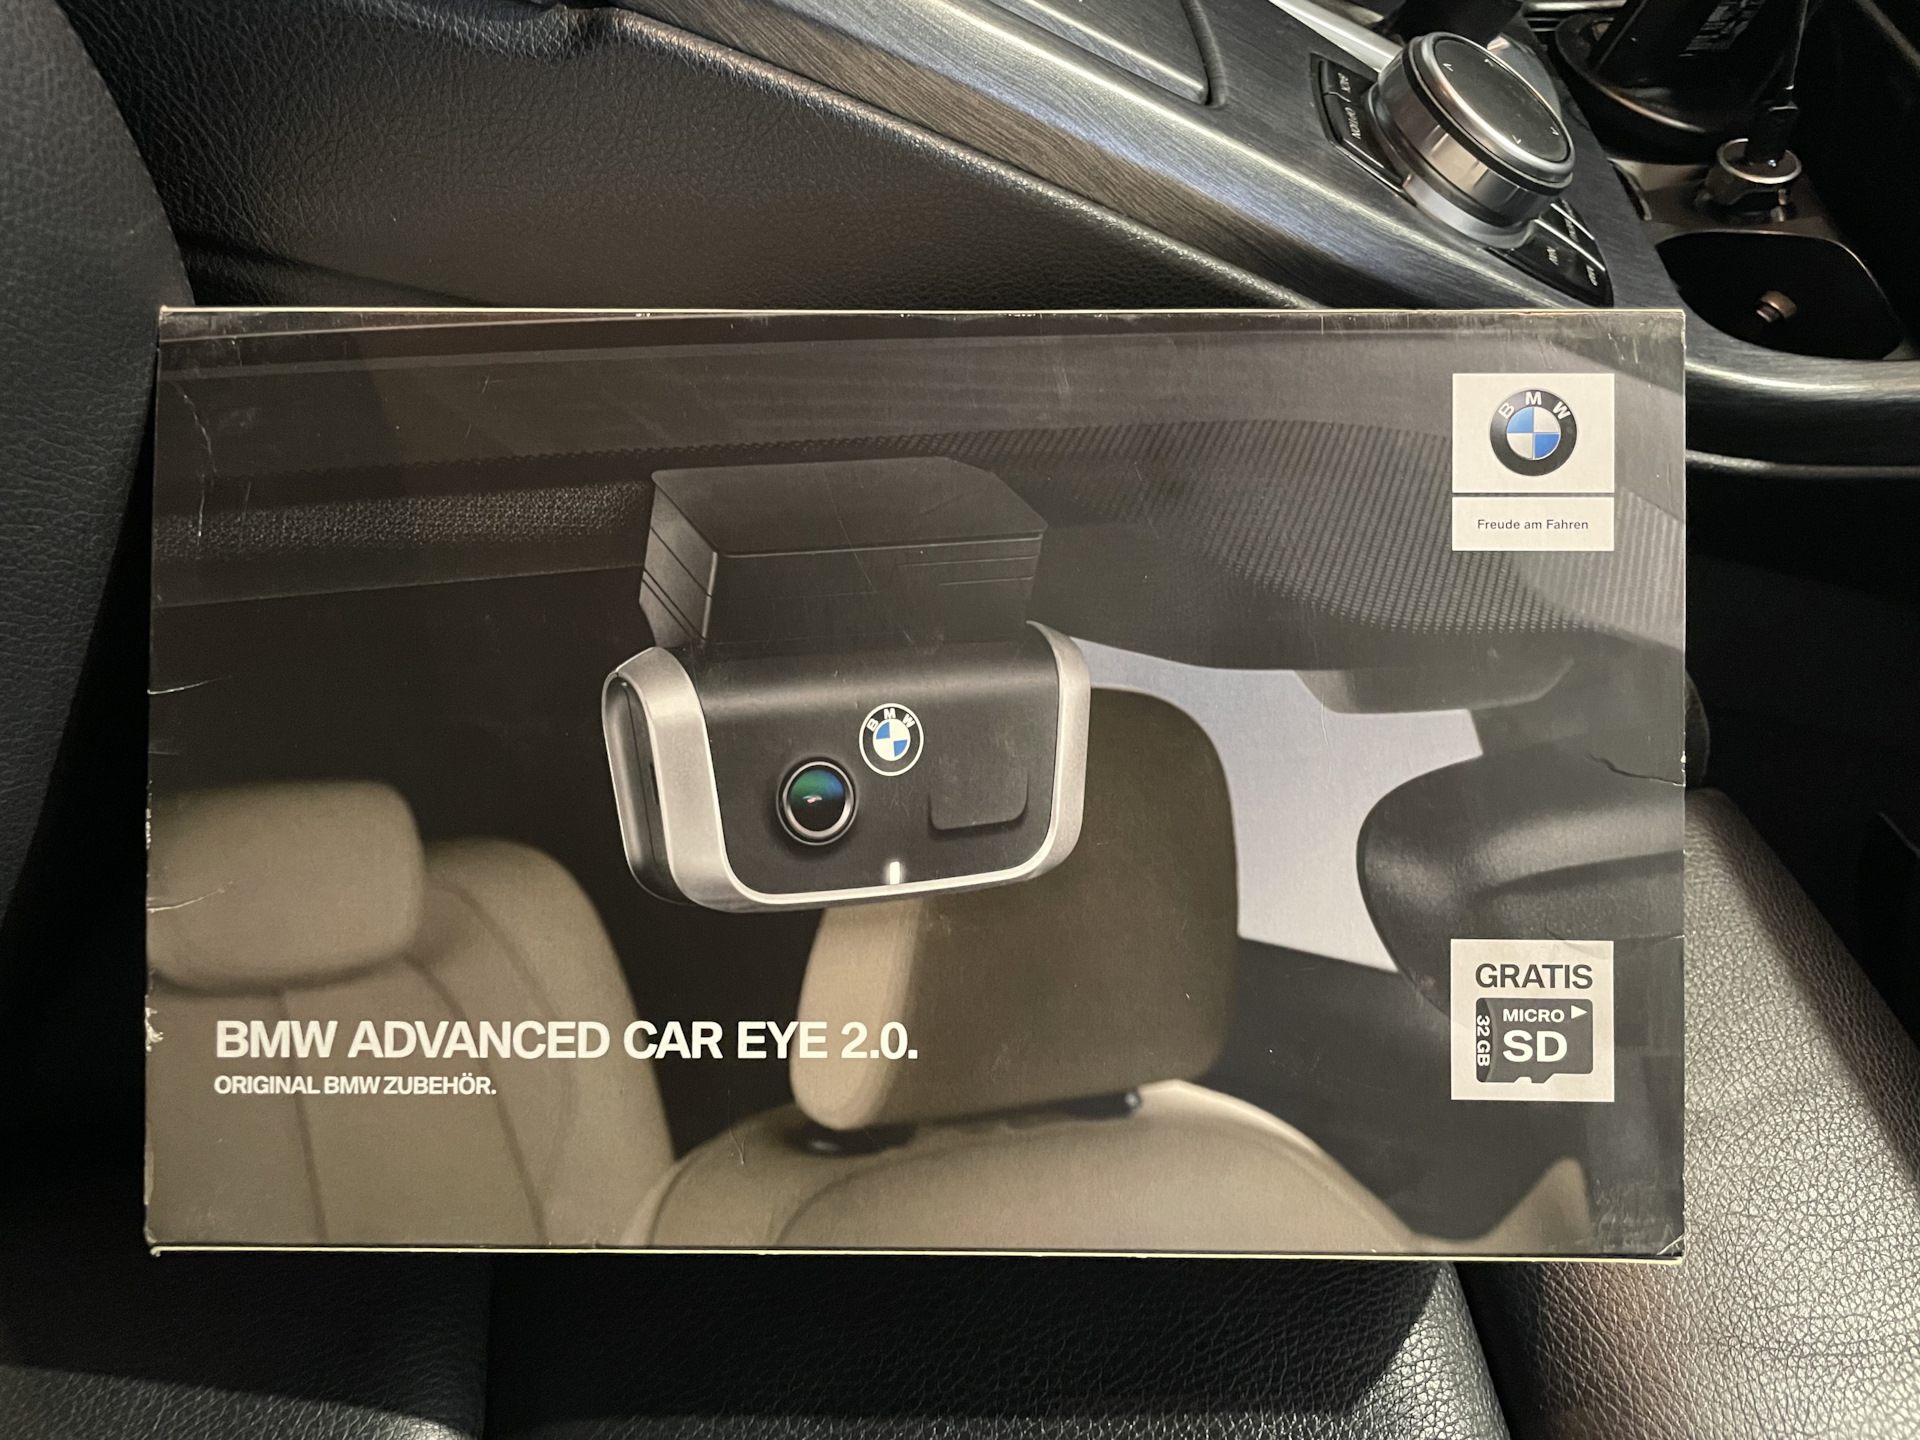 Car eye 3. Регистратор BMW Advanced car Eye 66212364600. Регистратор BMW Advanced car Eye. Видеорегистратор БМВ Advanced car Eye 3.0. BMW Advanced car Eye 2..